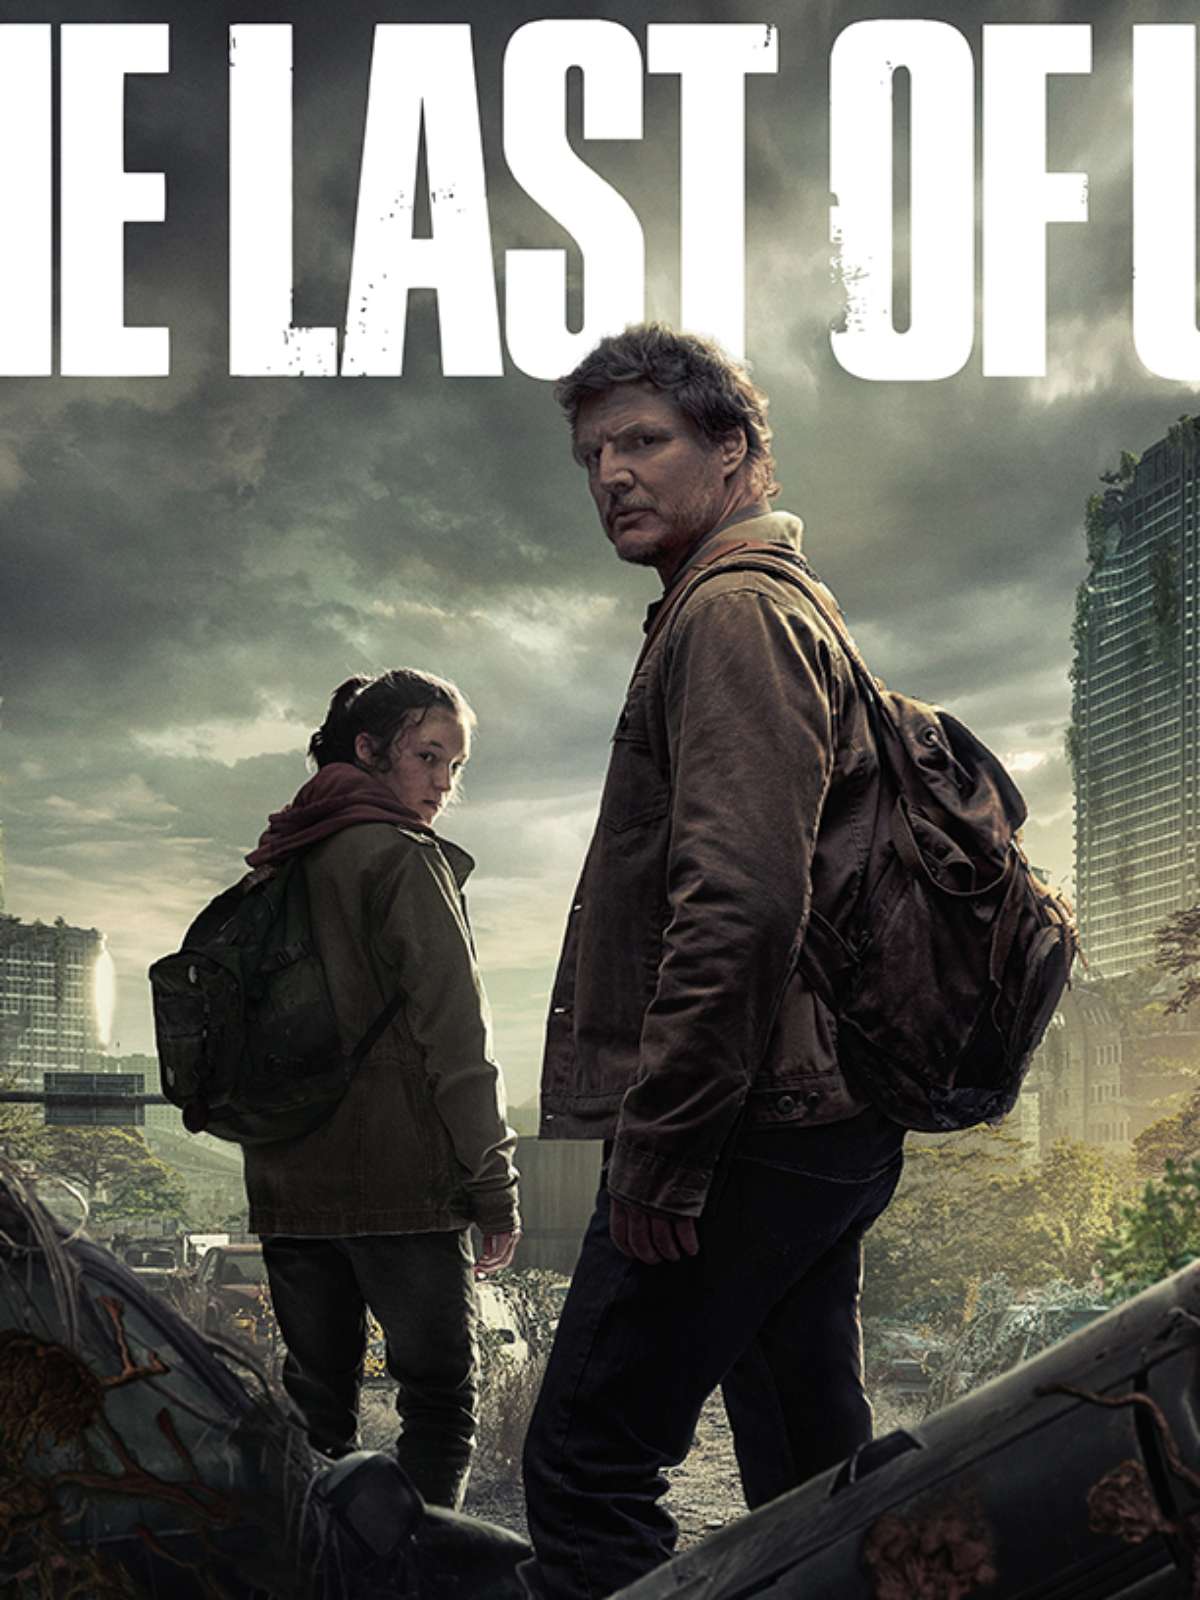 Onde e quando assistir a série The Last of Us?